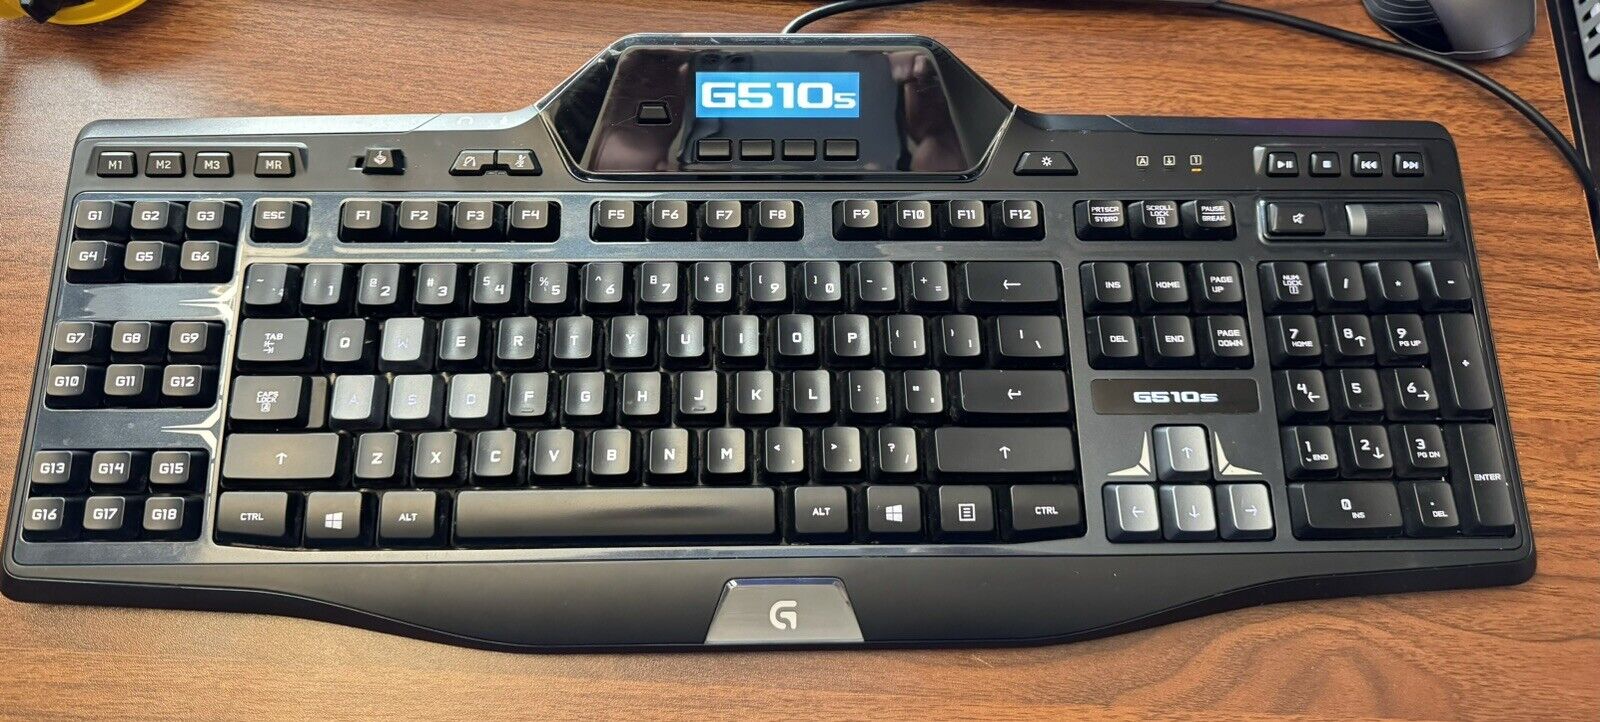 Logitech G510s Wired USB Backlit Gaming Black Keyboard Y-U0010